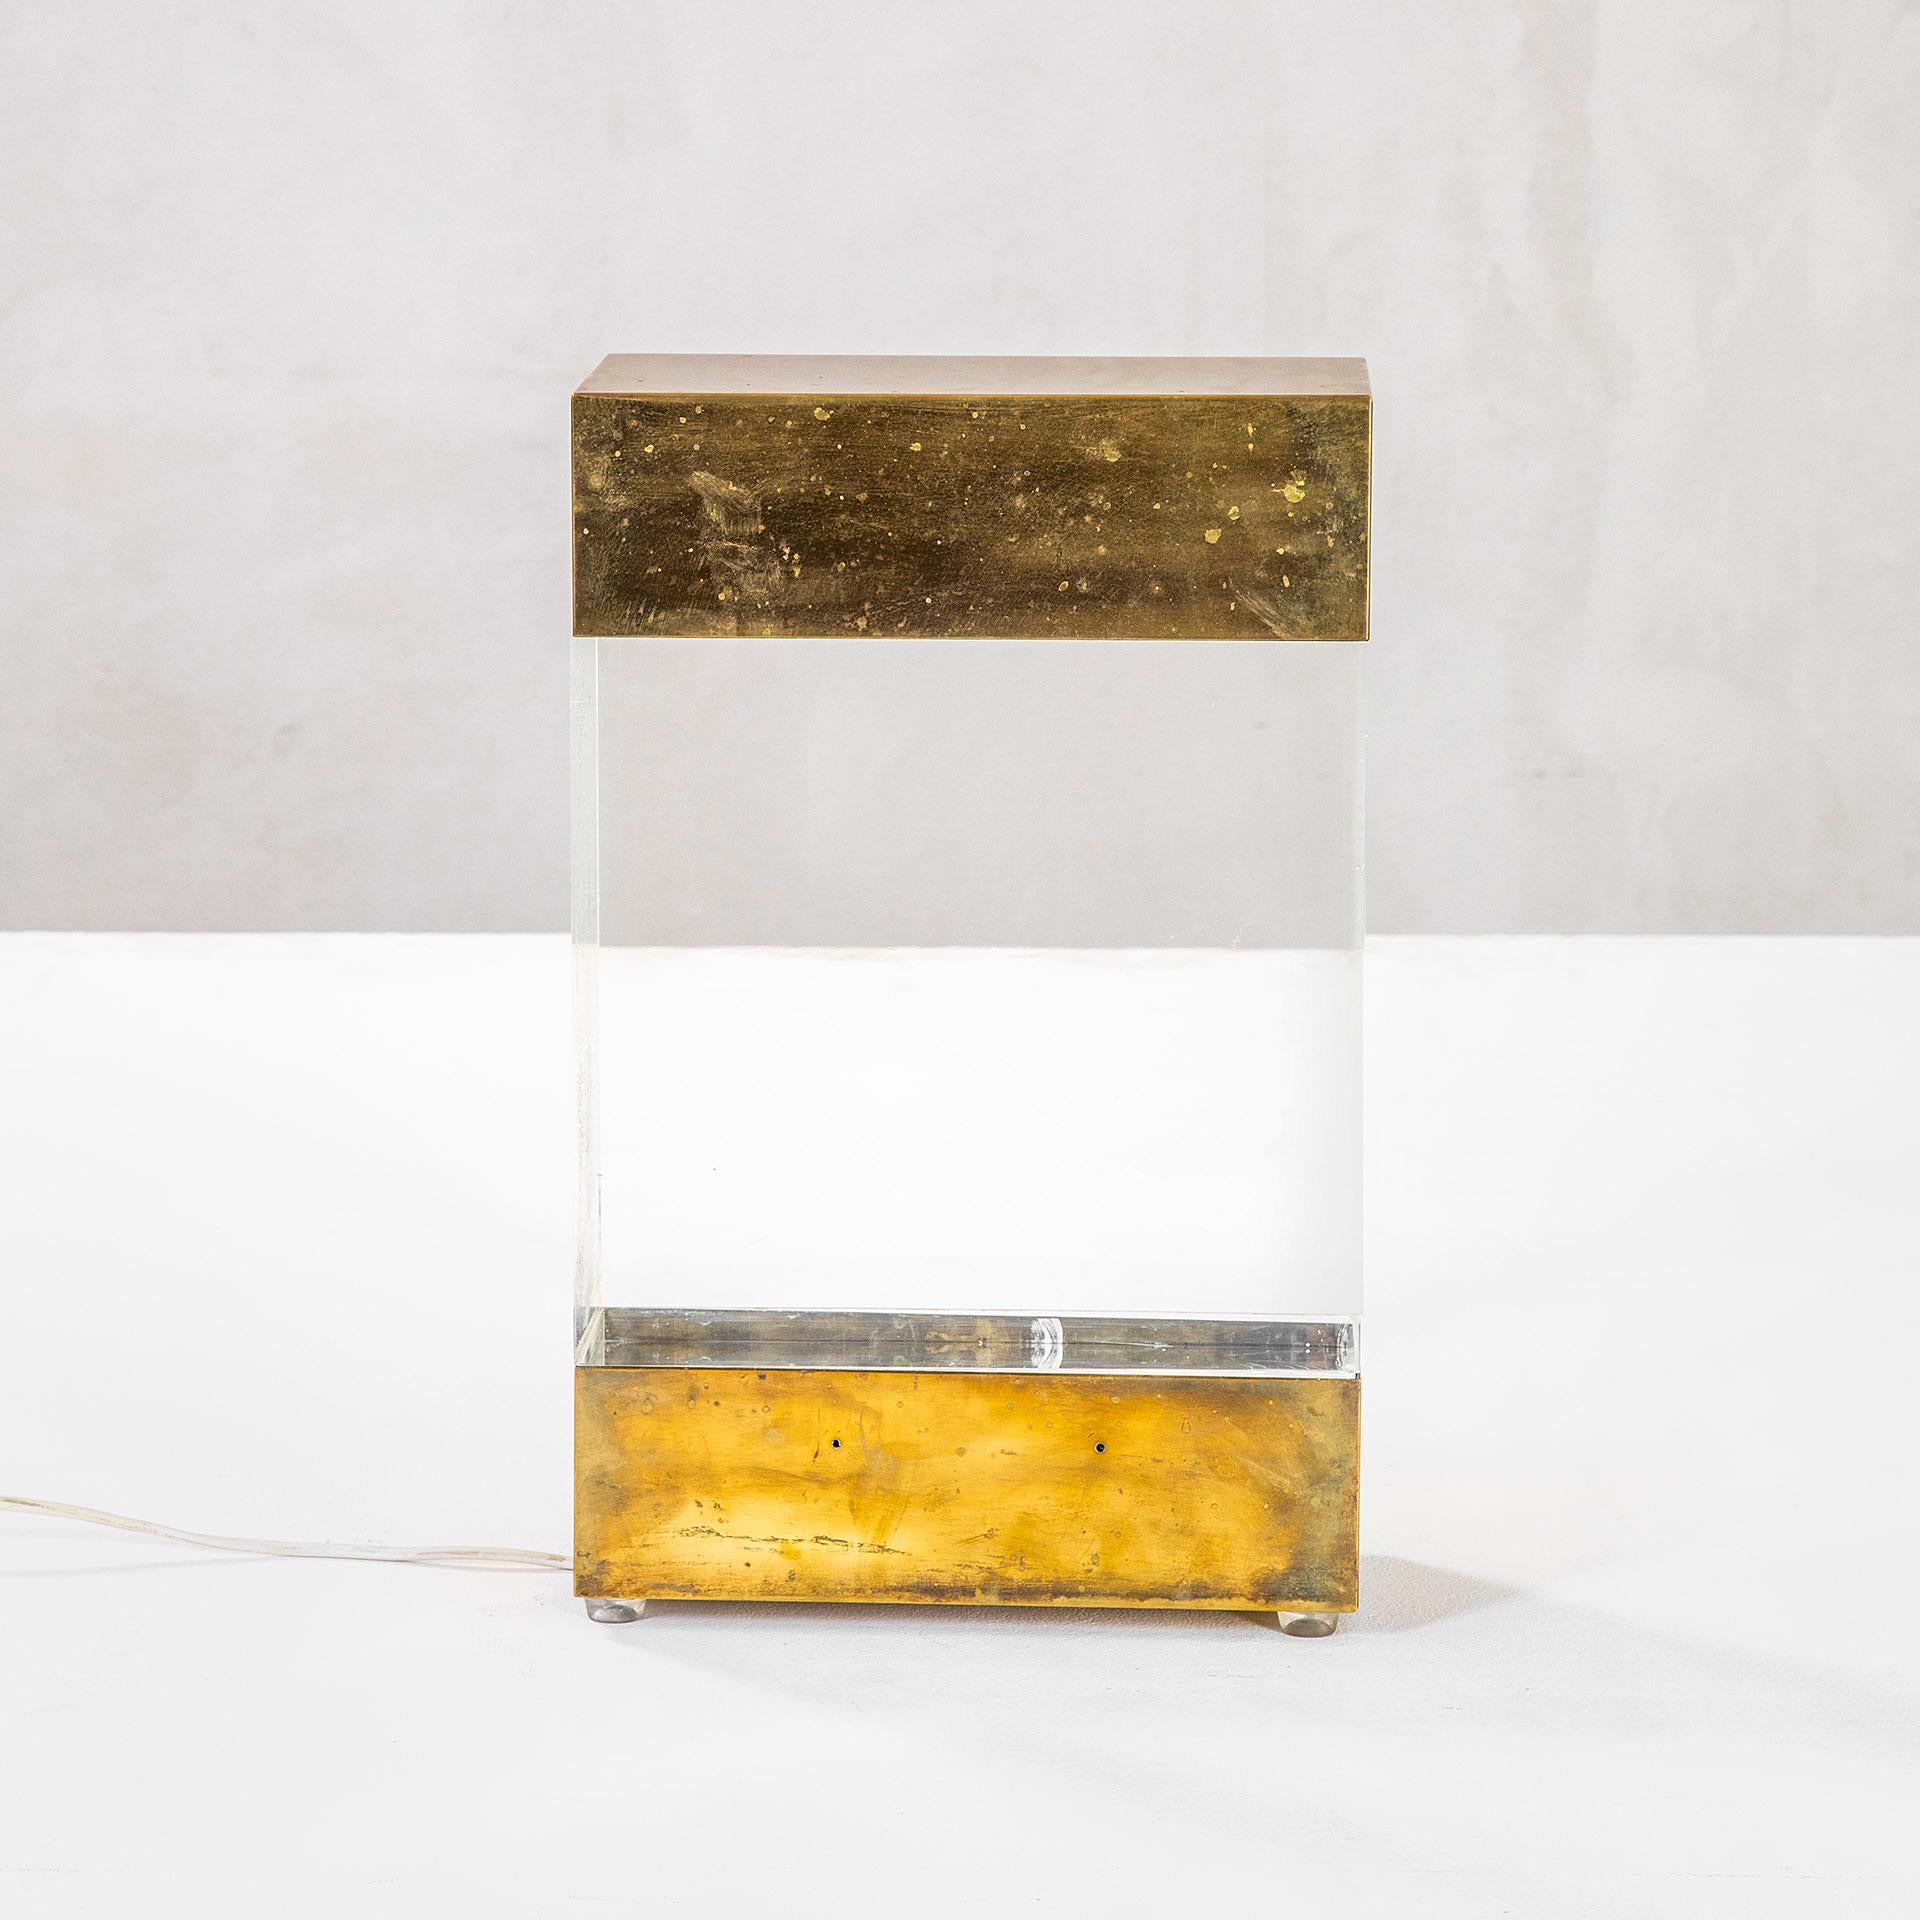 Italian 20th Century Gabriella Crespi Table Lamp in Brass and Plexiglass, '70s For Sale